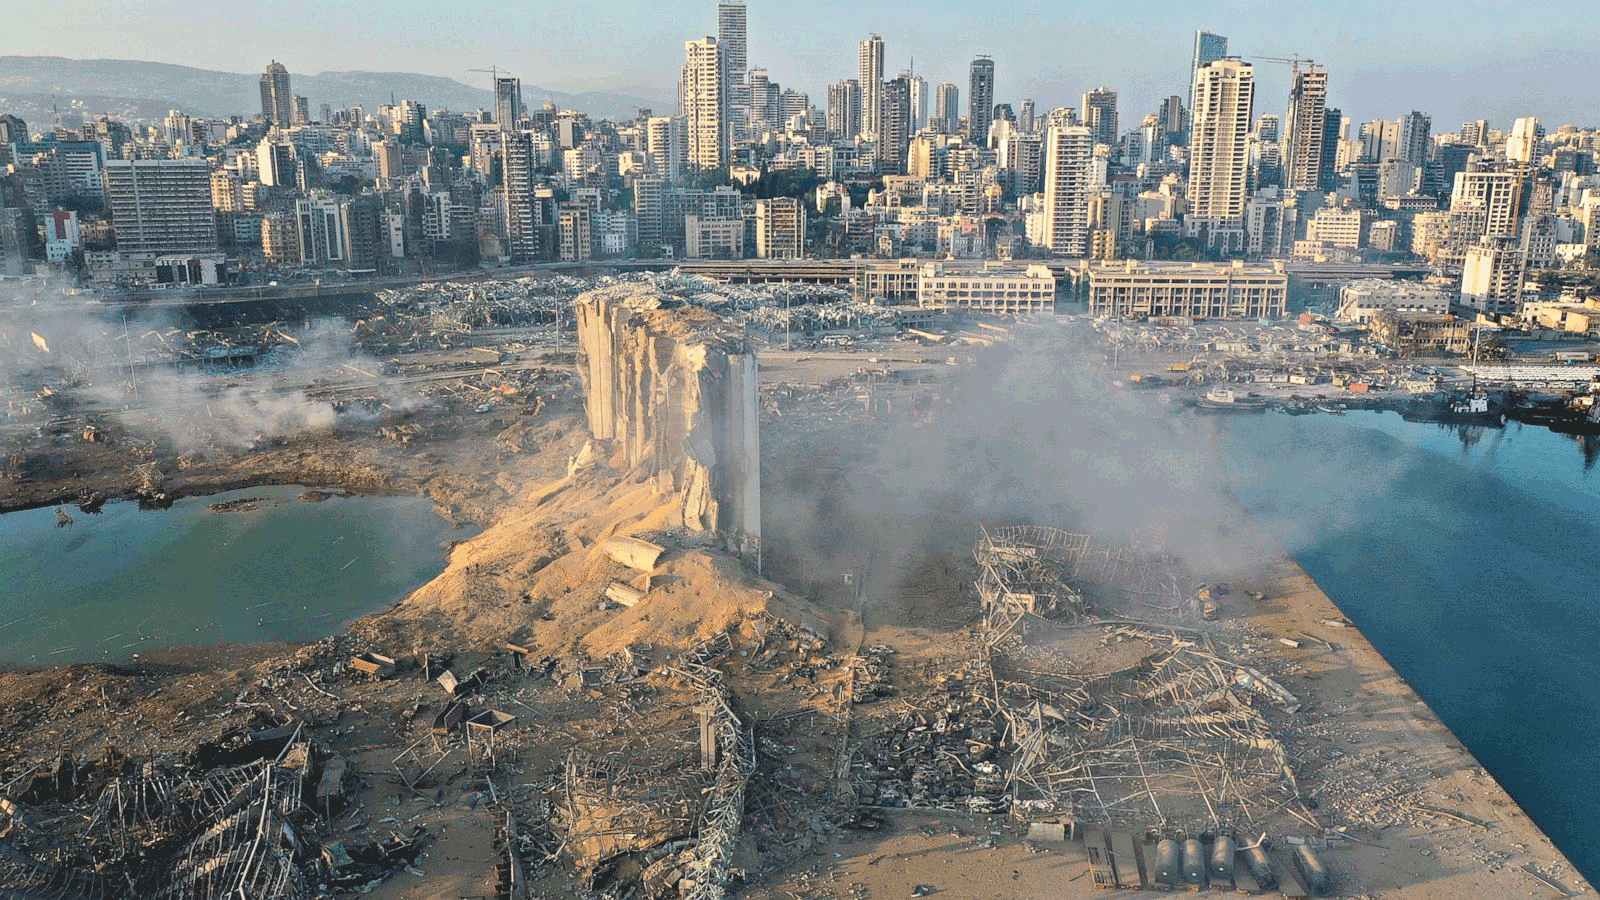 Beyrut patlamasının uydu görüntüleri